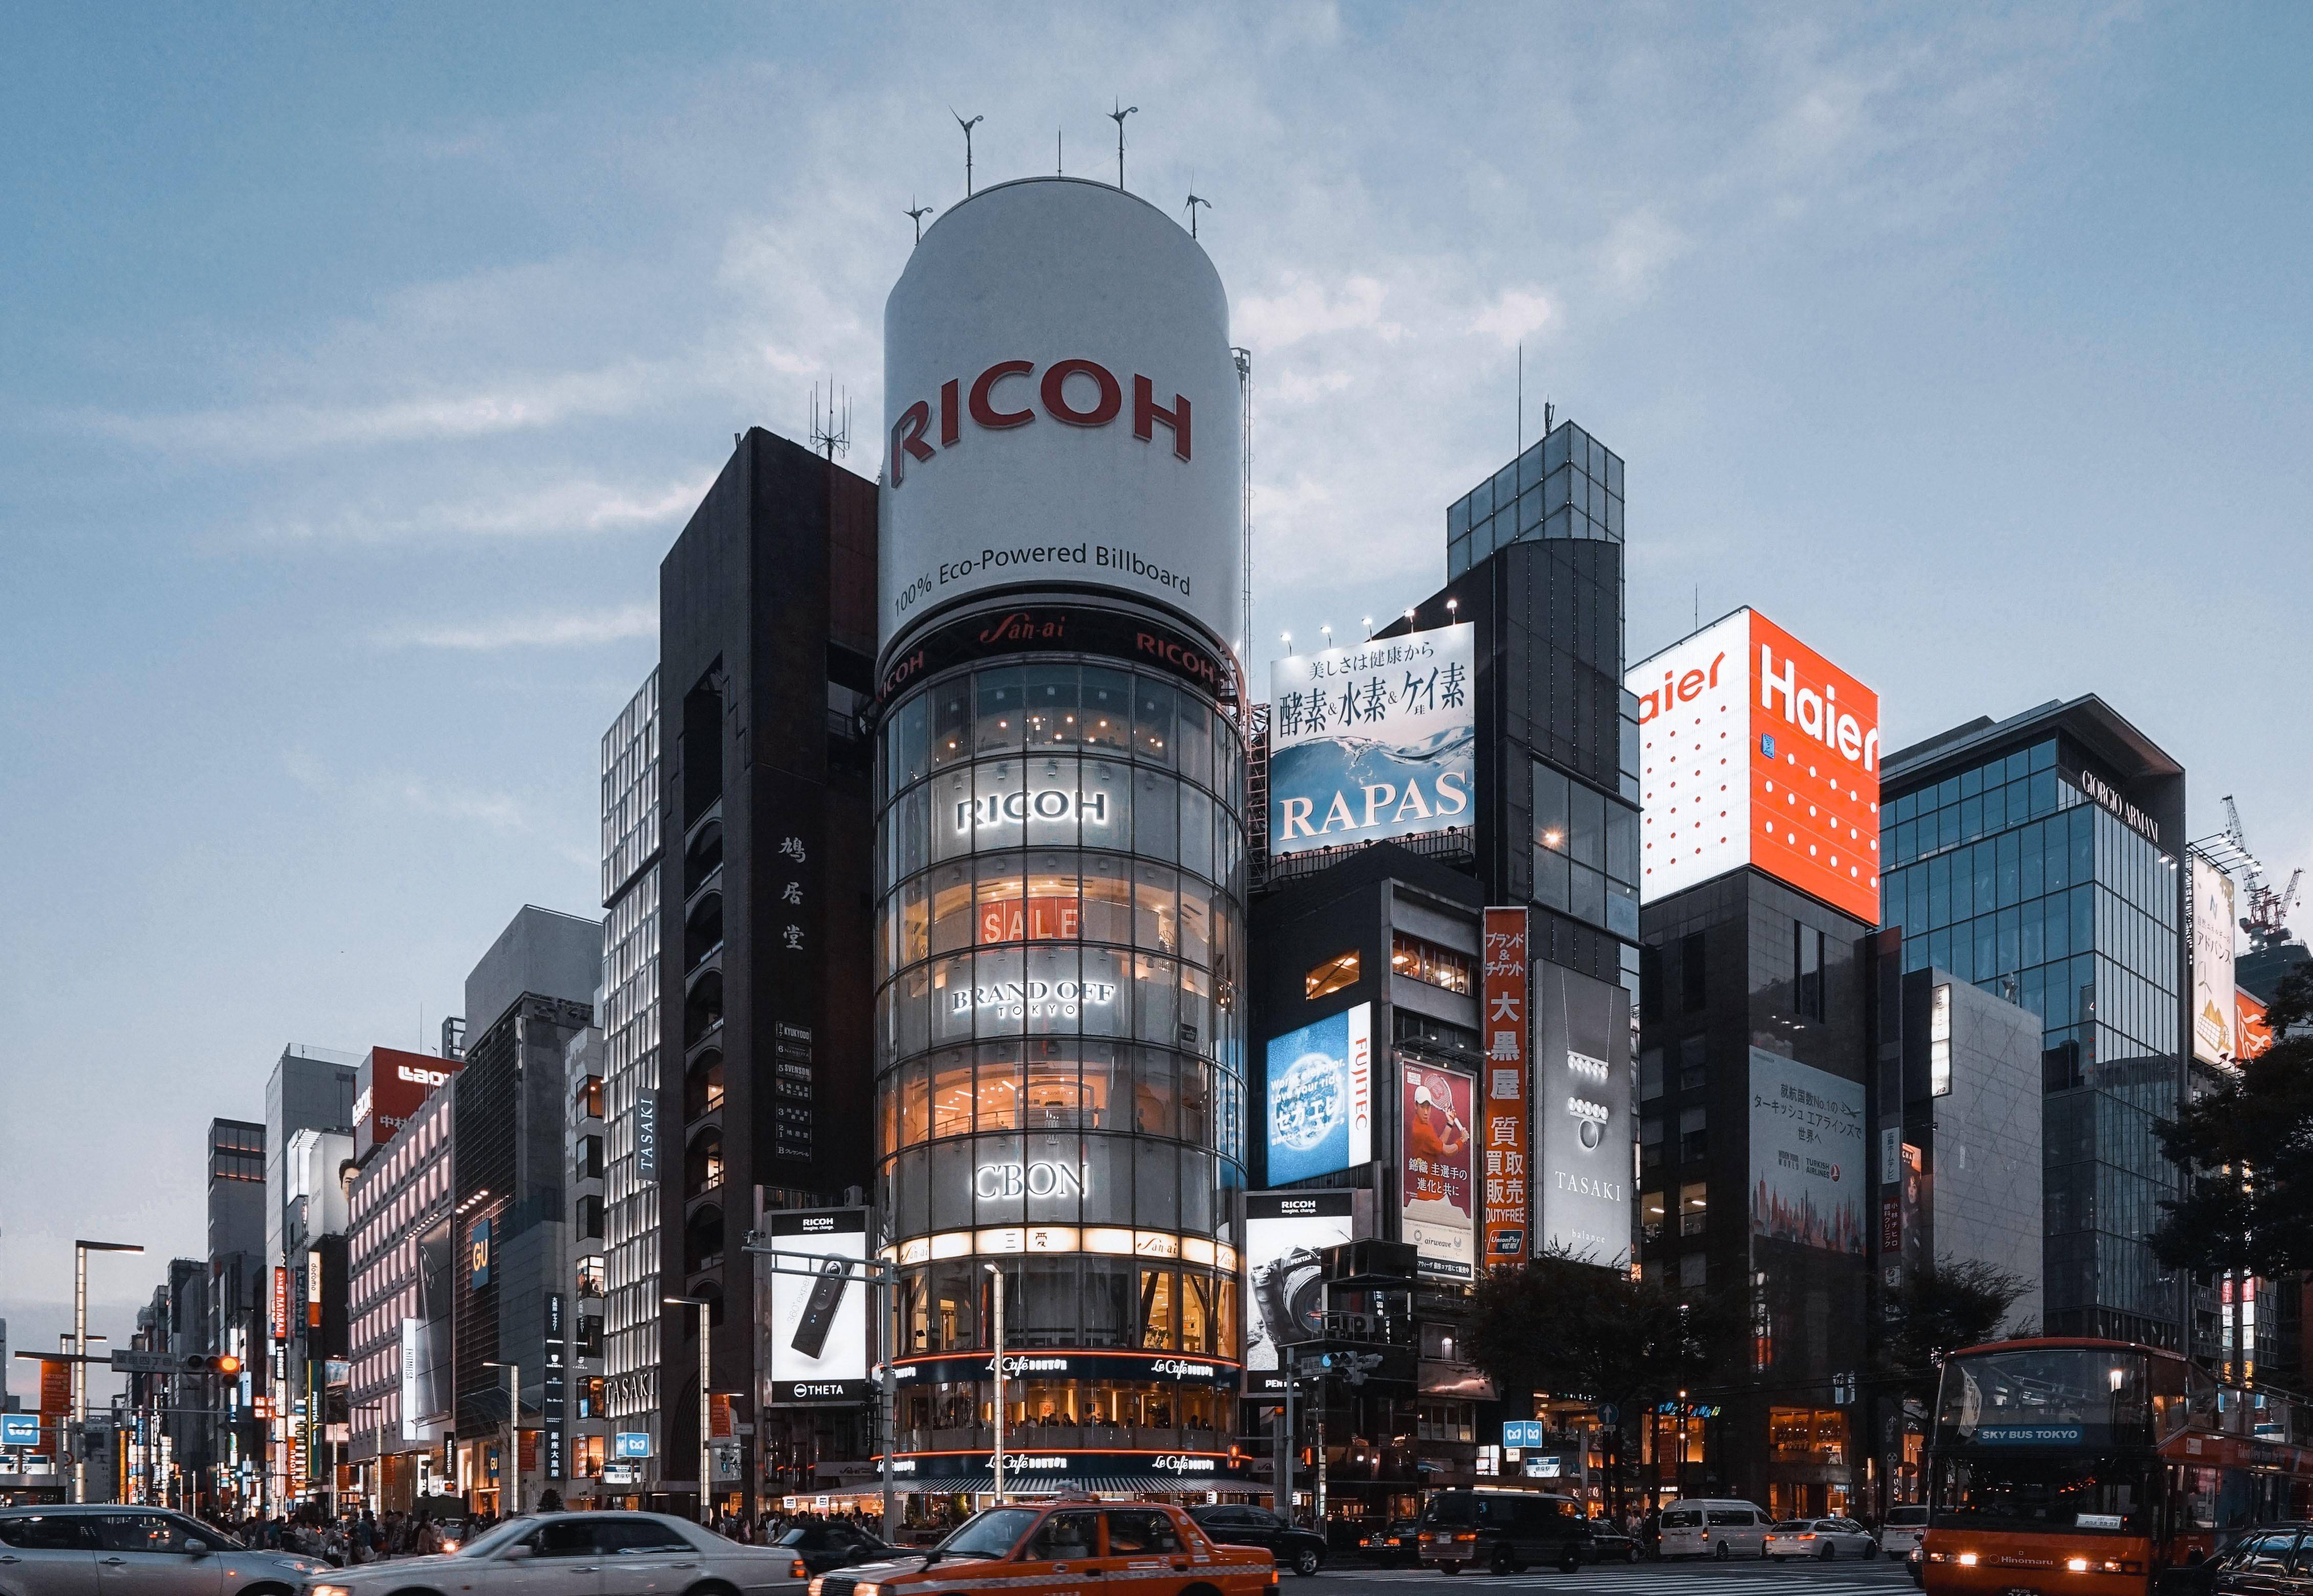 实拍日本东京银座,既热闹而又整洁,不愧是亚洲第一商业街